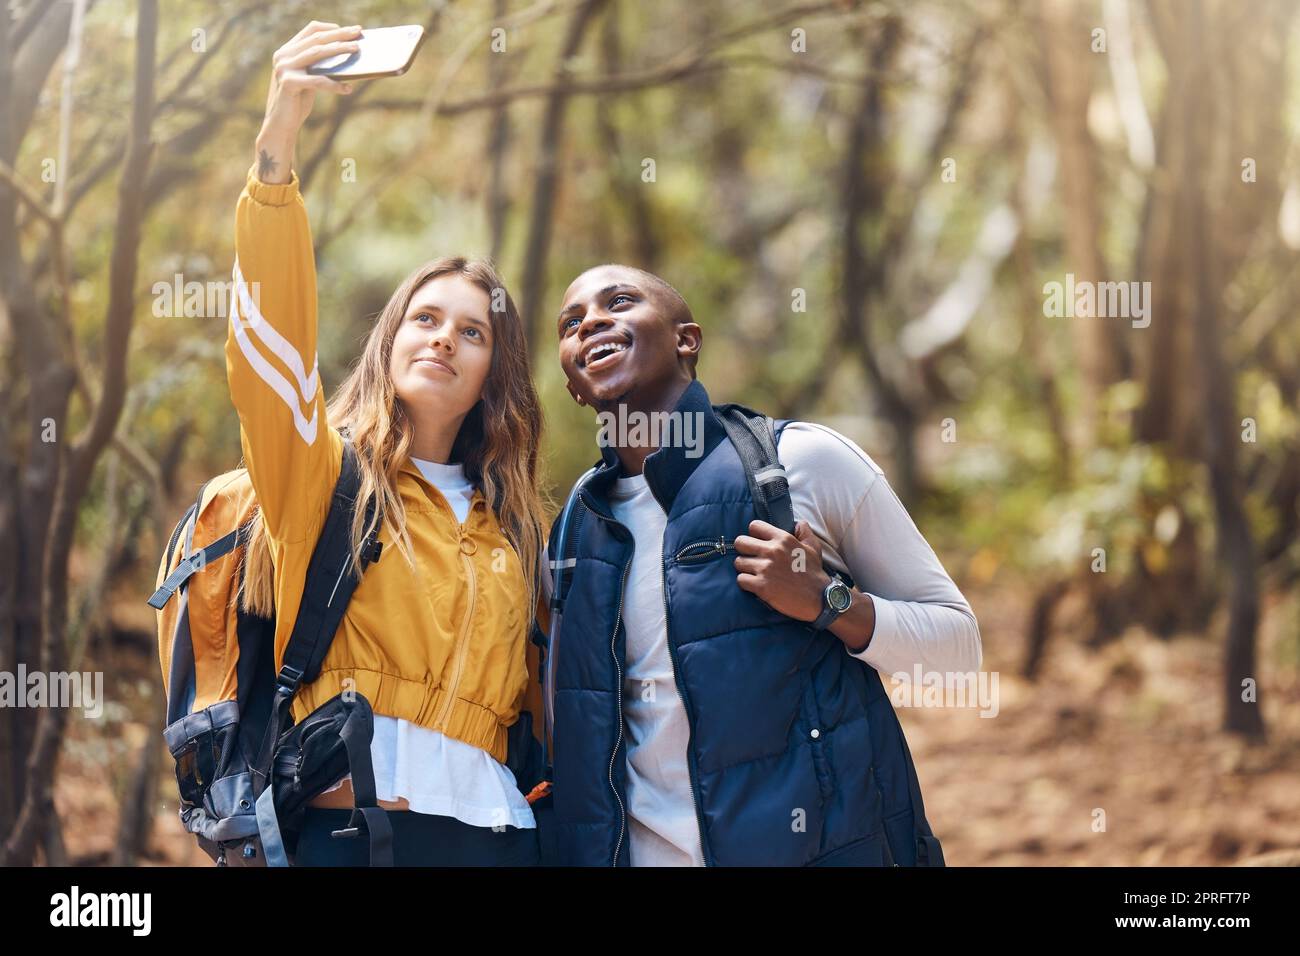 Selfie, couple heureux et randonnée aventure tout en tenant le téléphone pour des souvenirs de voyage de vacances dans une forêt ou des bois. Heureux, amour et exercice dans une relation saine avec l'homme noir et la femme blanche Banque D'Images